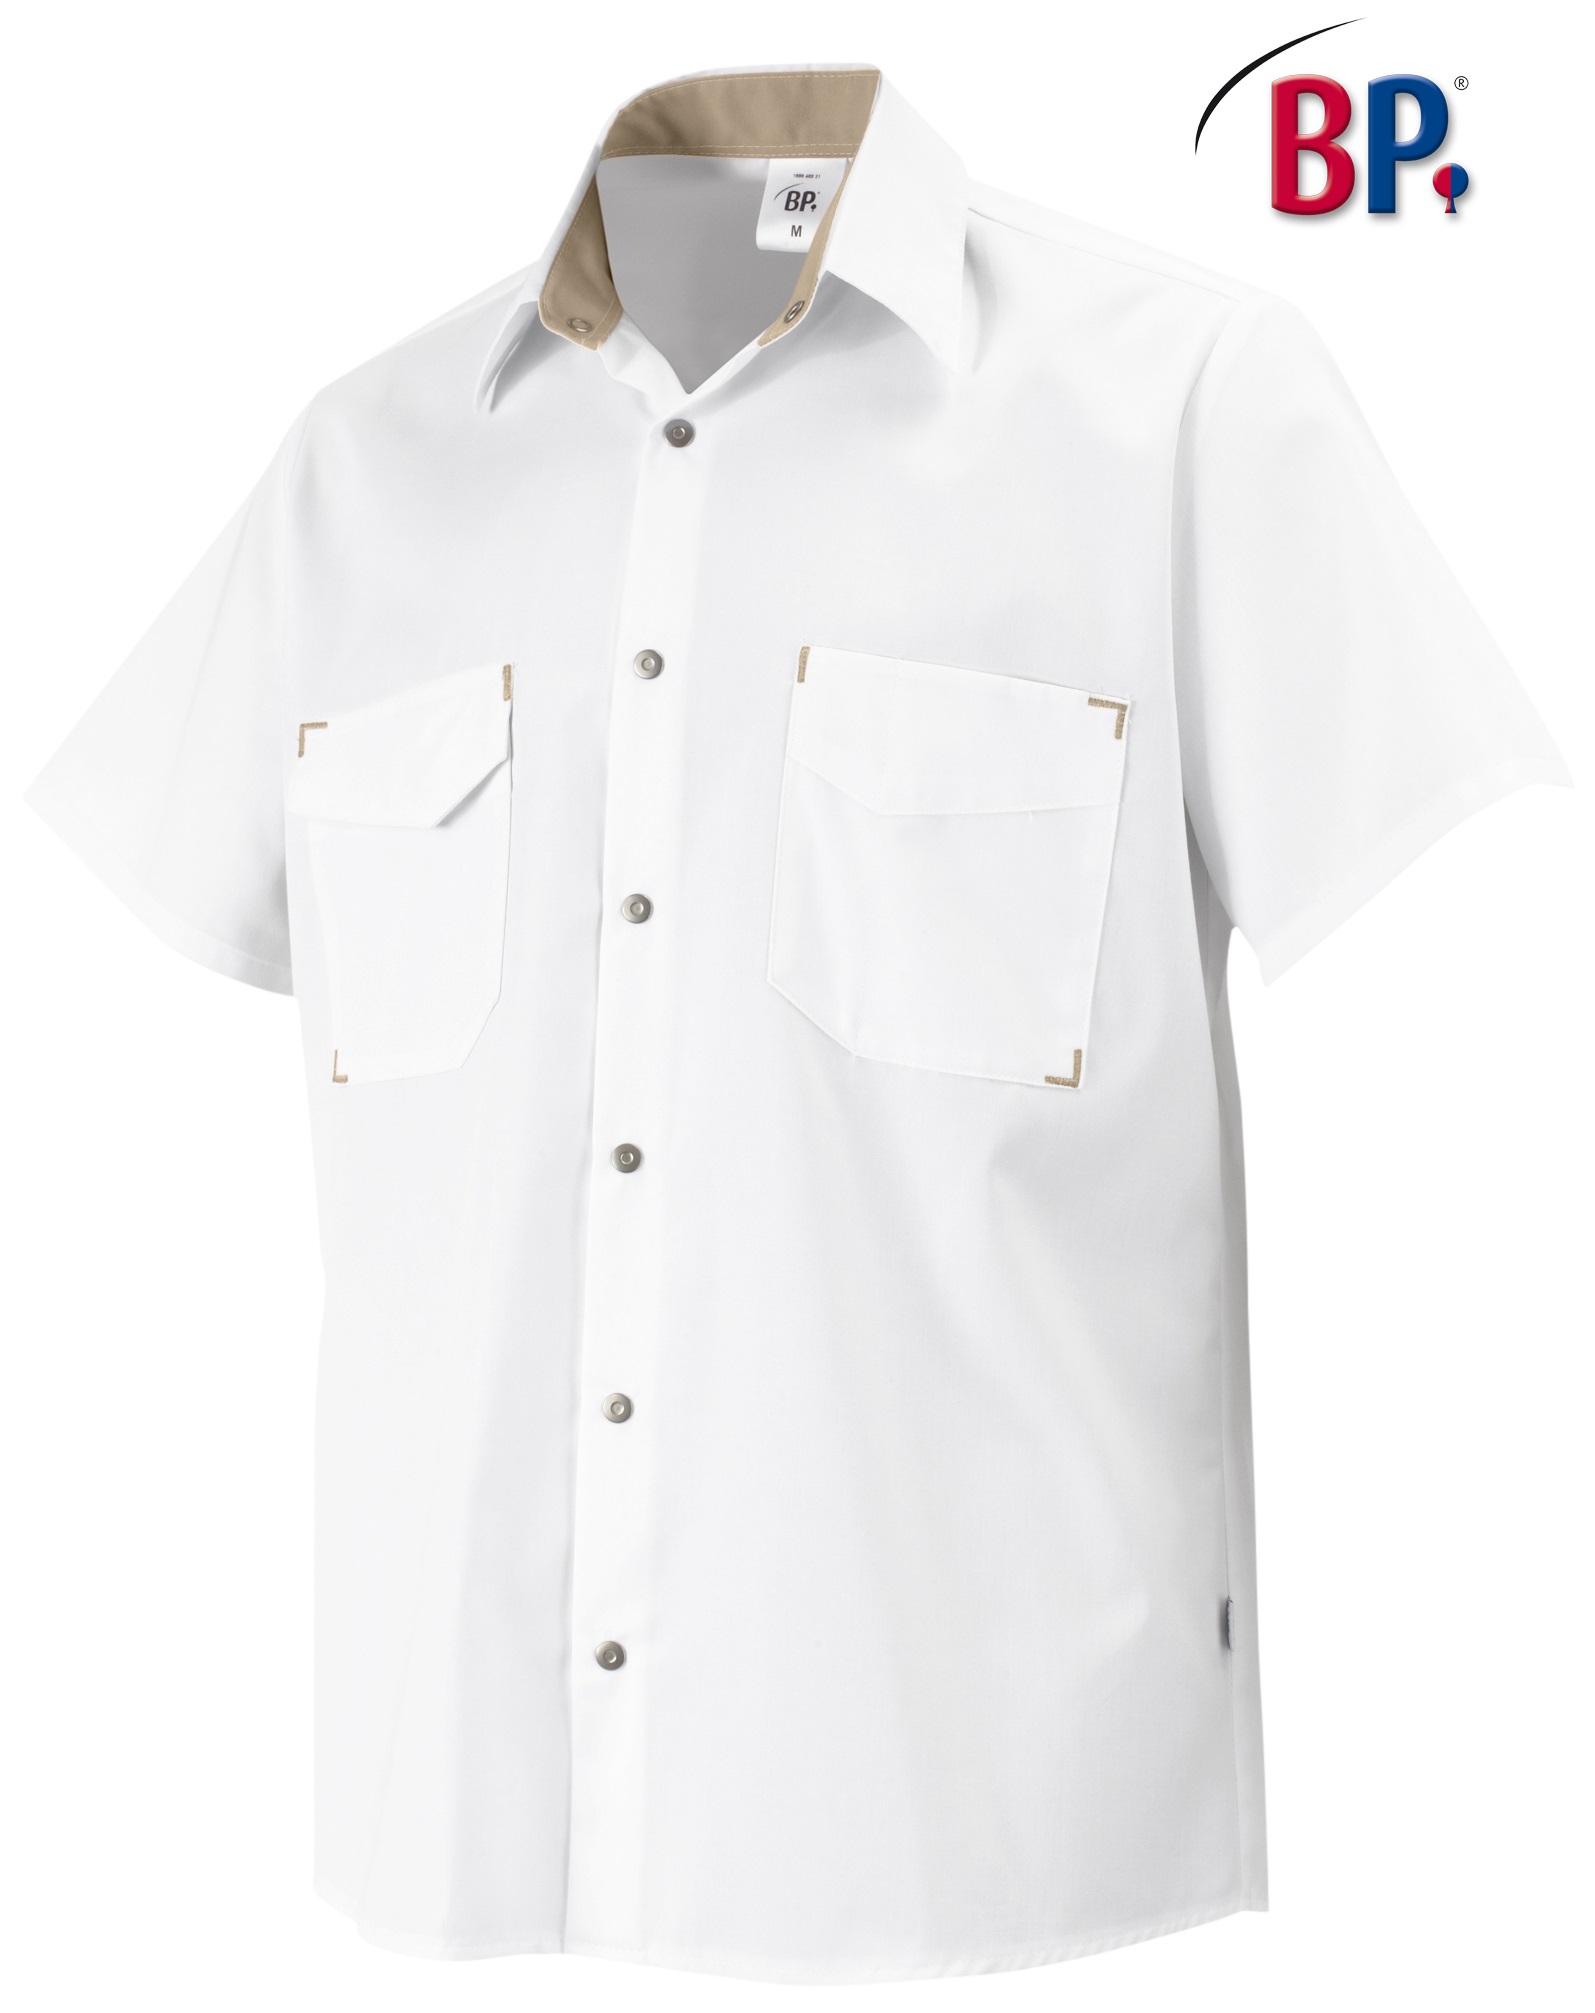 BP Hemd Gastronomiekleidung Cateringkleidung Arbeitsshirt Berufsshirt für Sie Ihn weiß ca 150 g